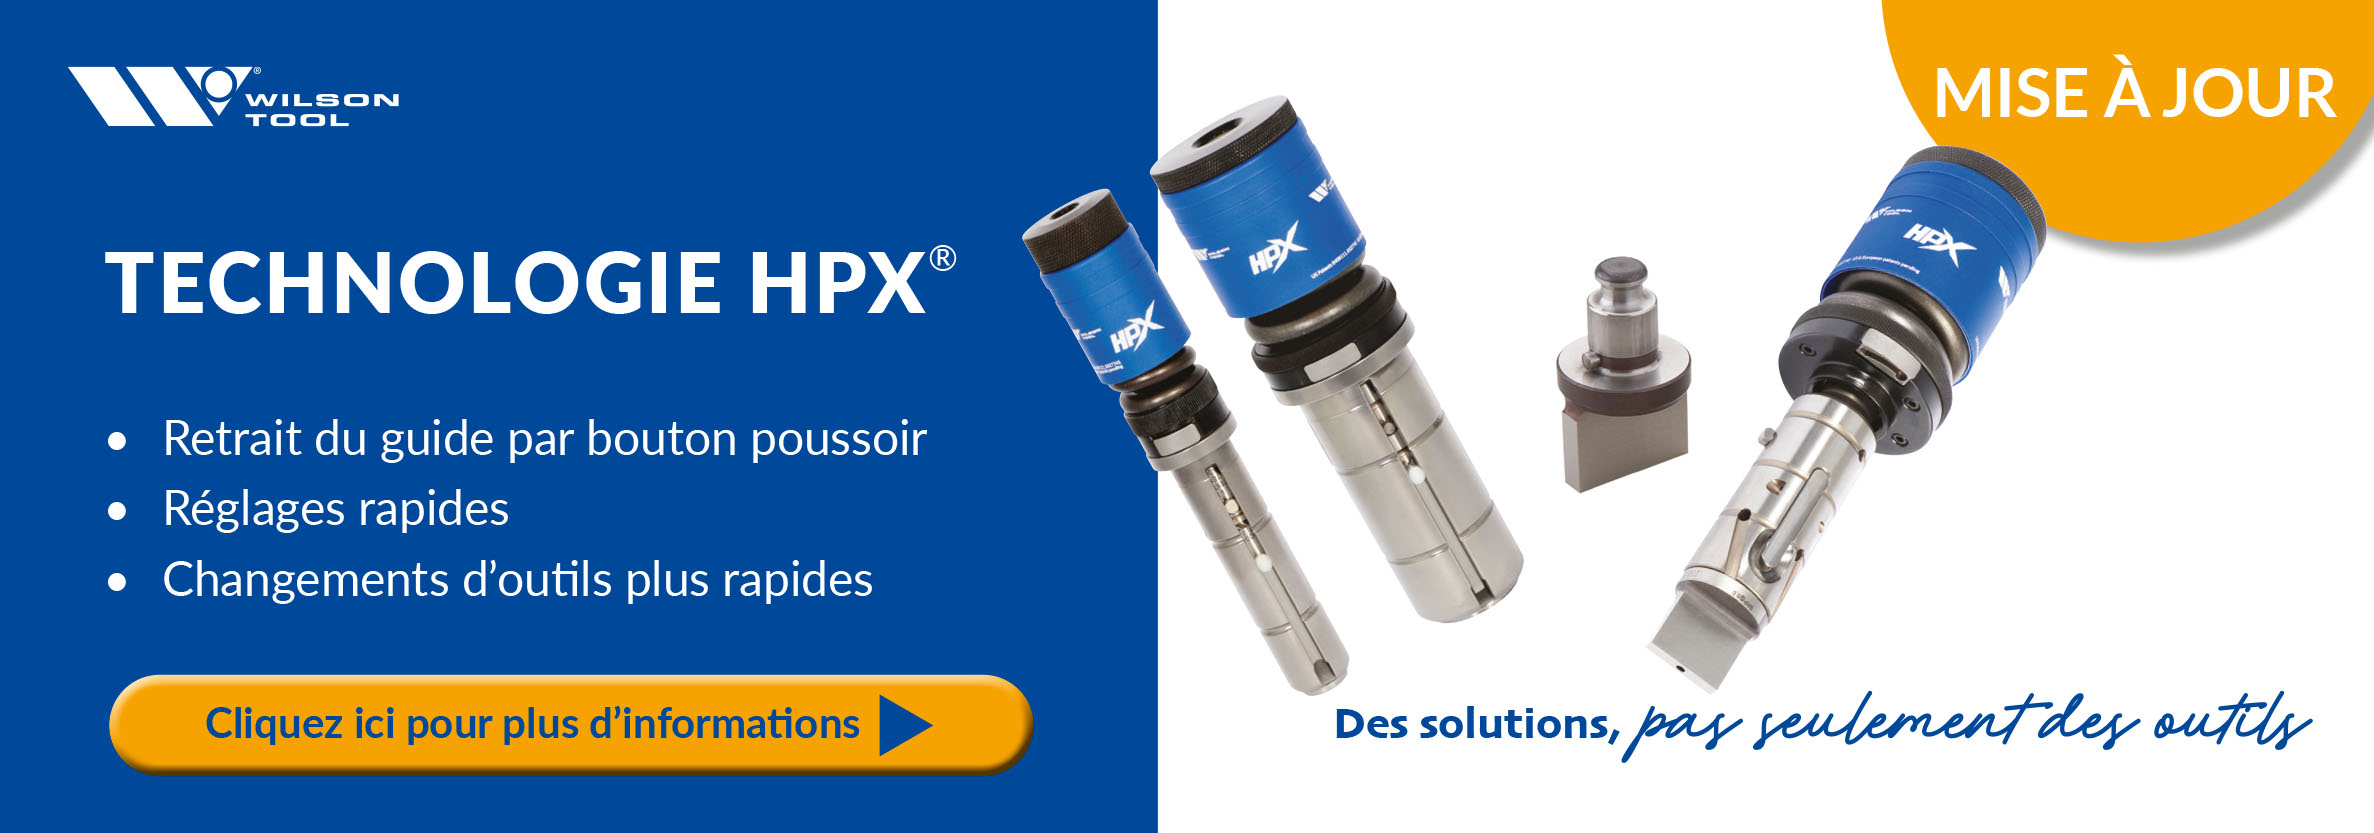 HPX newsletter (fr)